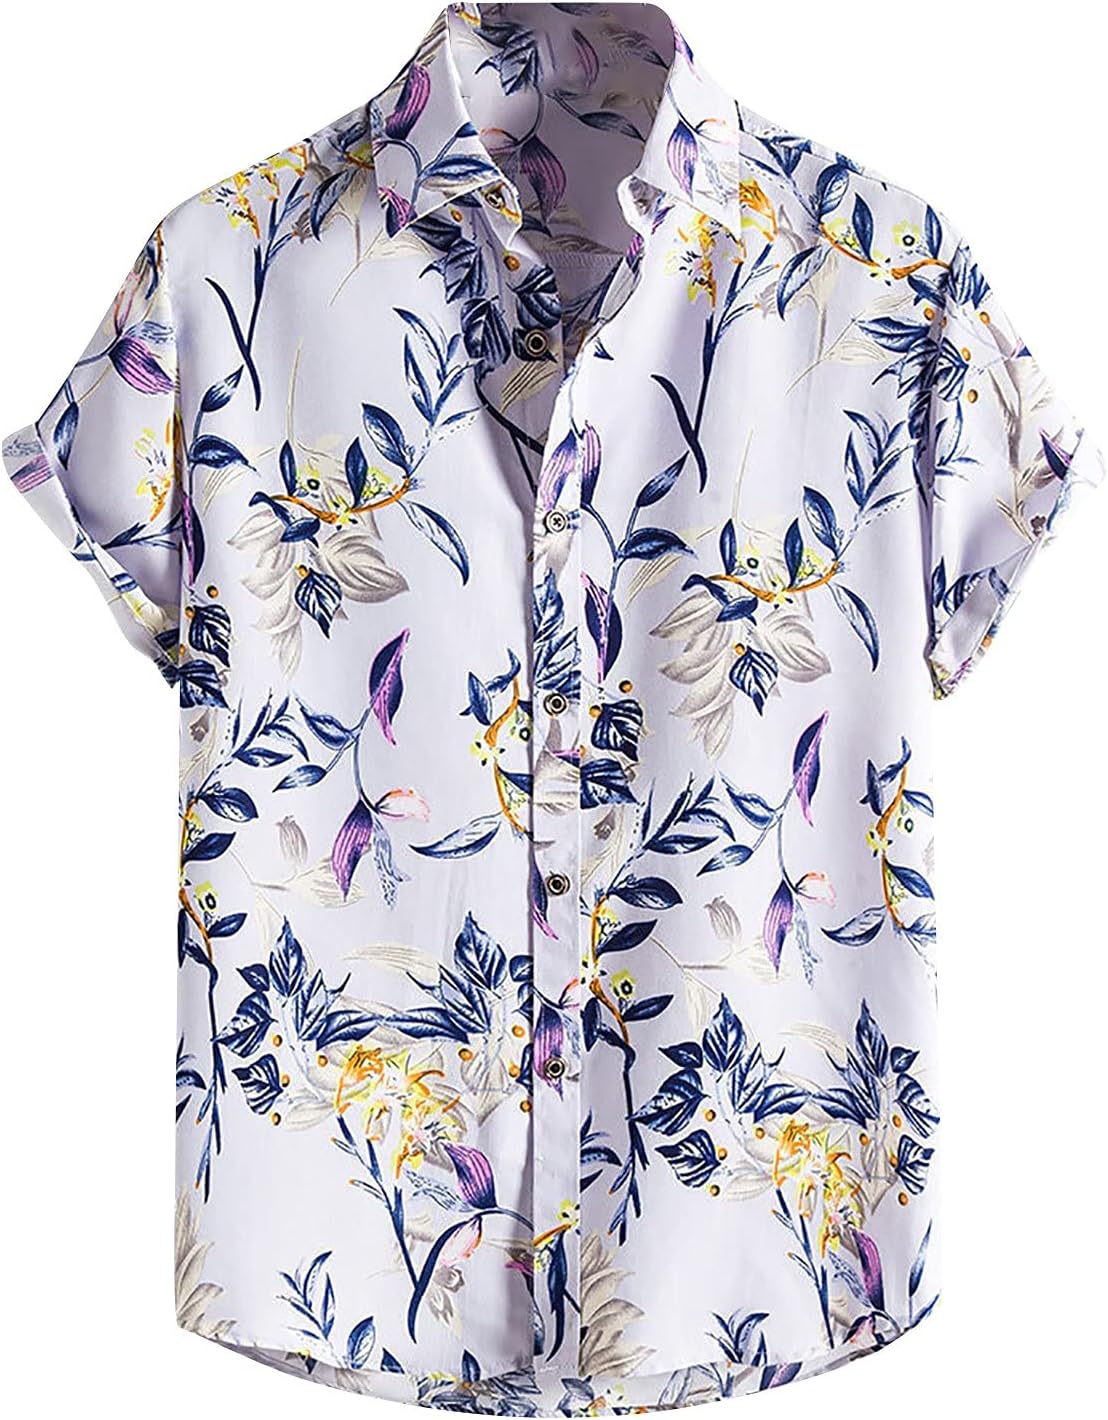 Hawaiian Shirt for Men Men’s Short Sleeve Button Down Shirts Beach Summer Tops Tropical Dress Floral Aloha Shirt